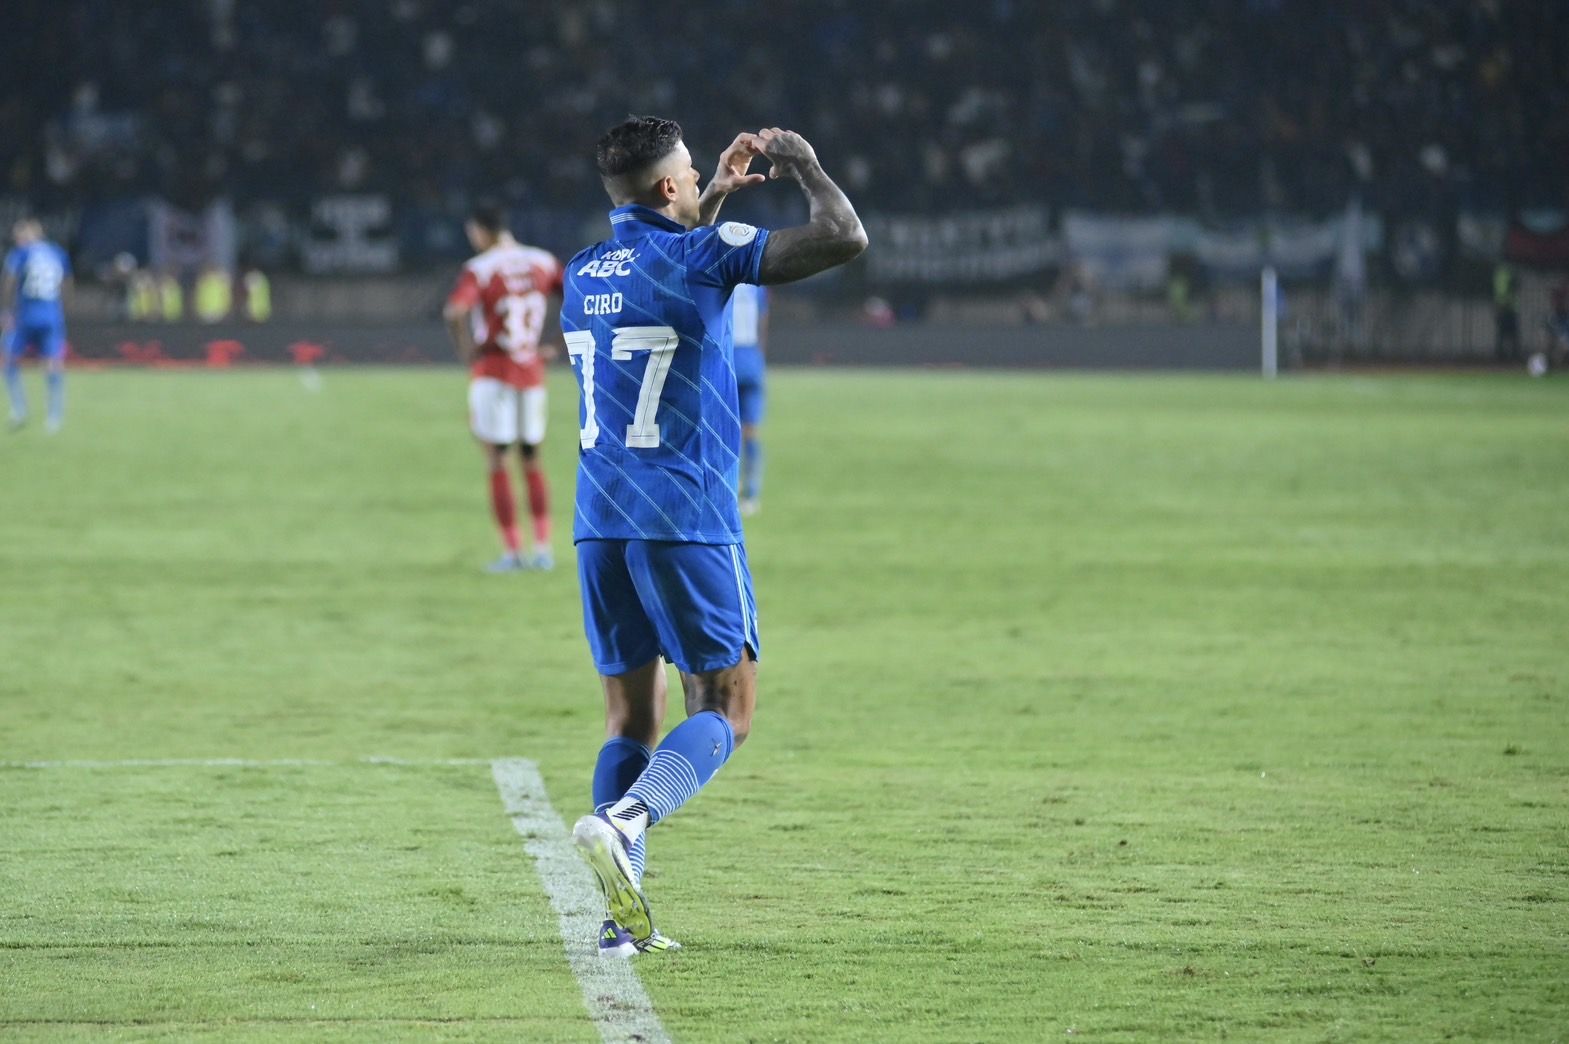 Ciro Alves mencetak gol yang membuka kemenangan Persib Bandung atas Madura United di leg pertama final Liga 1.